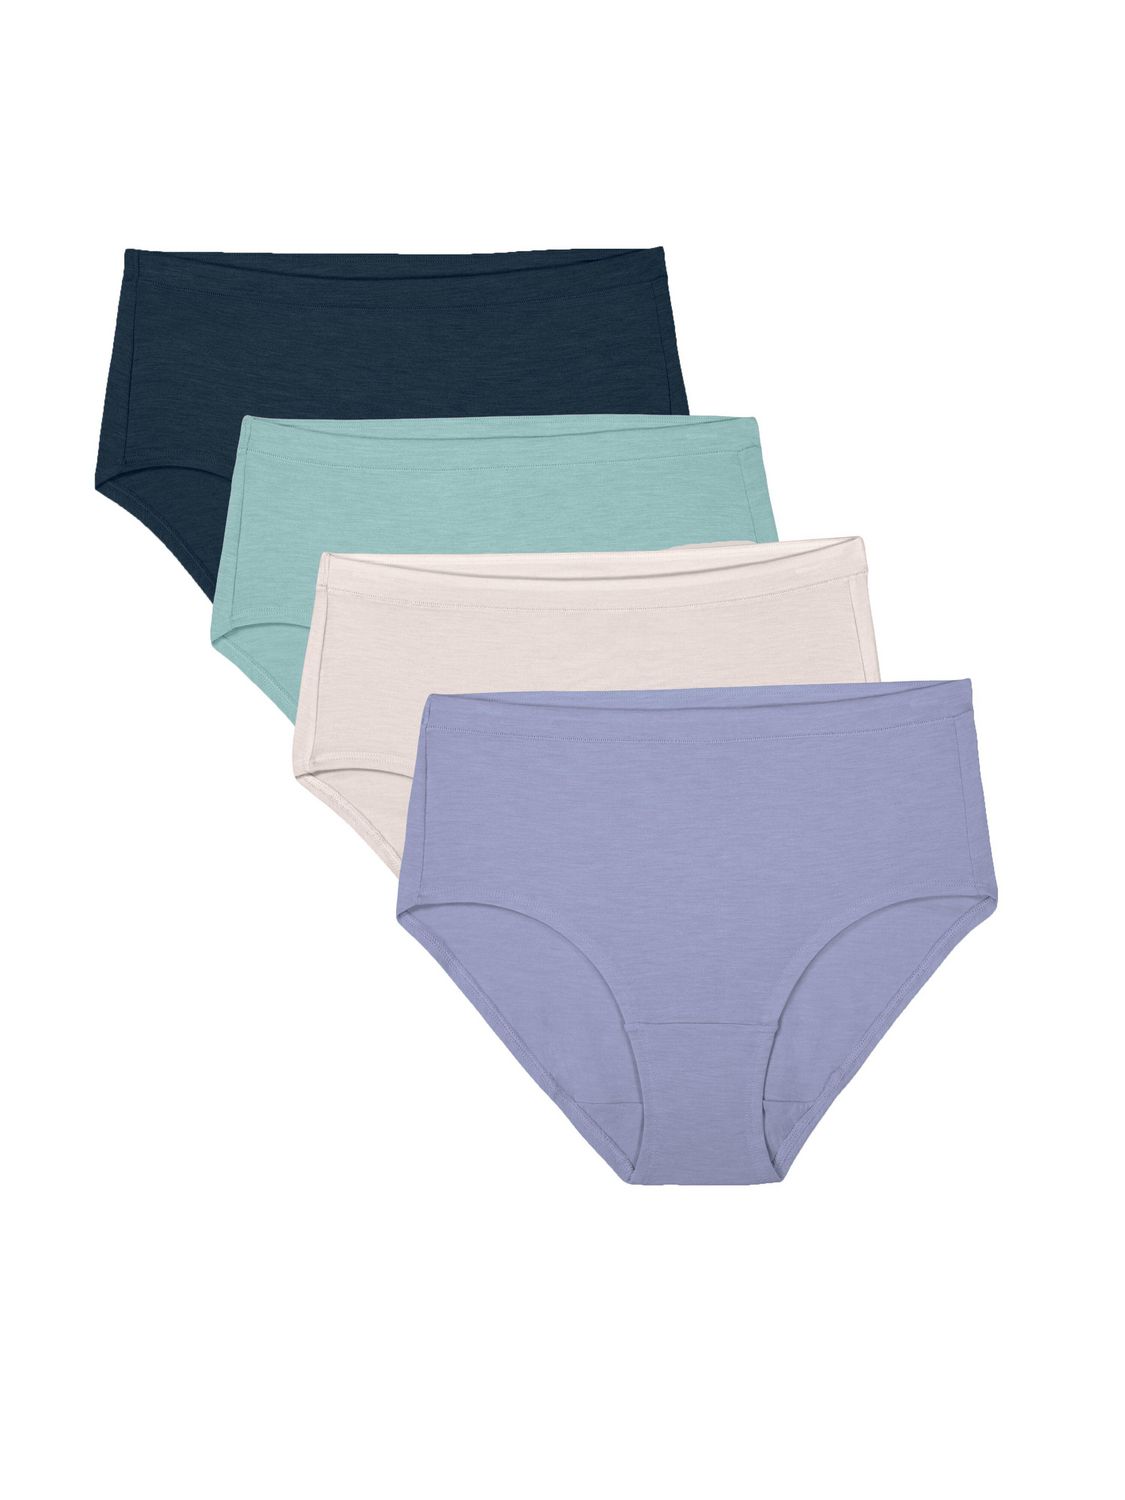 Women's Underwear Ladies Soft Modal Full Briefs Panties 8 Pack